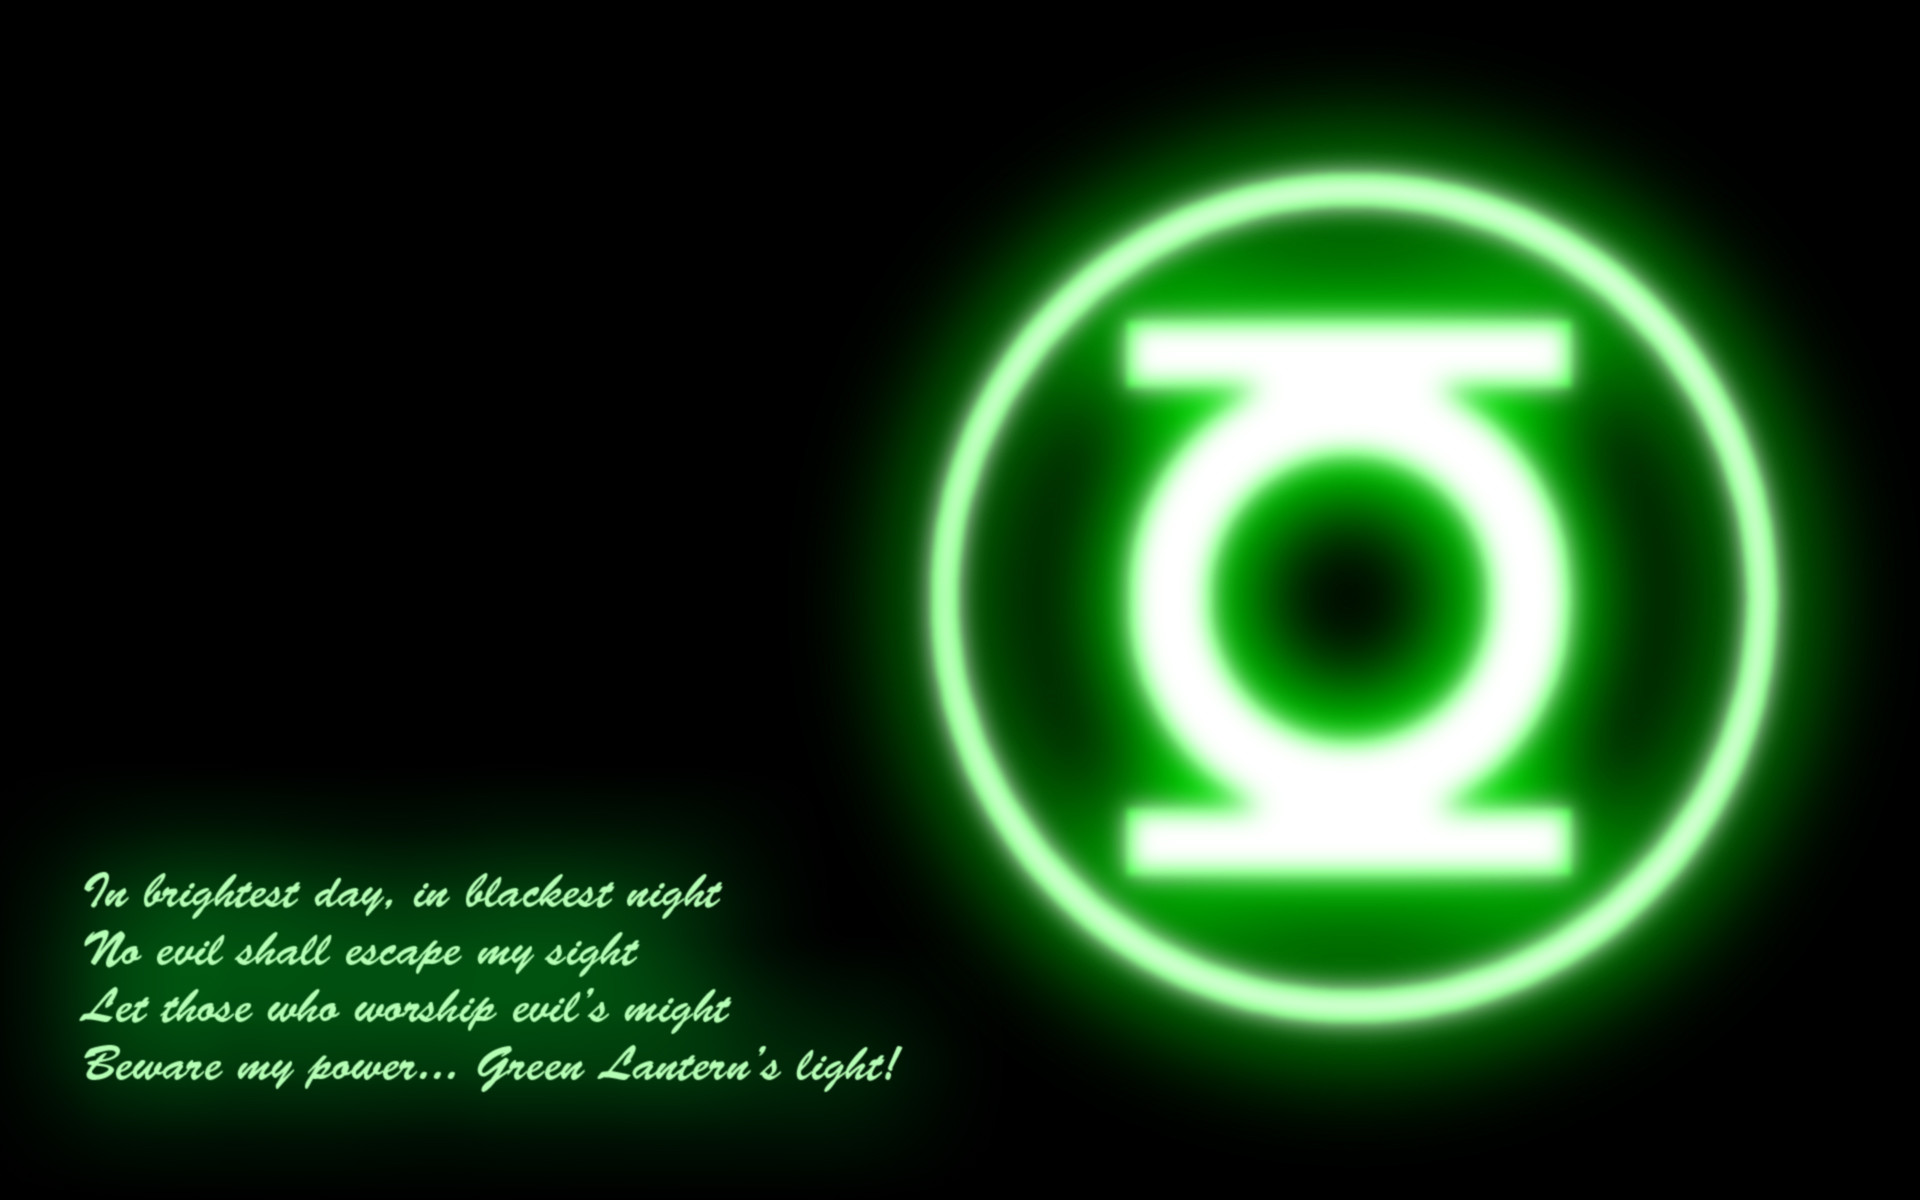 Green Lantern Oath Wallpaper Image